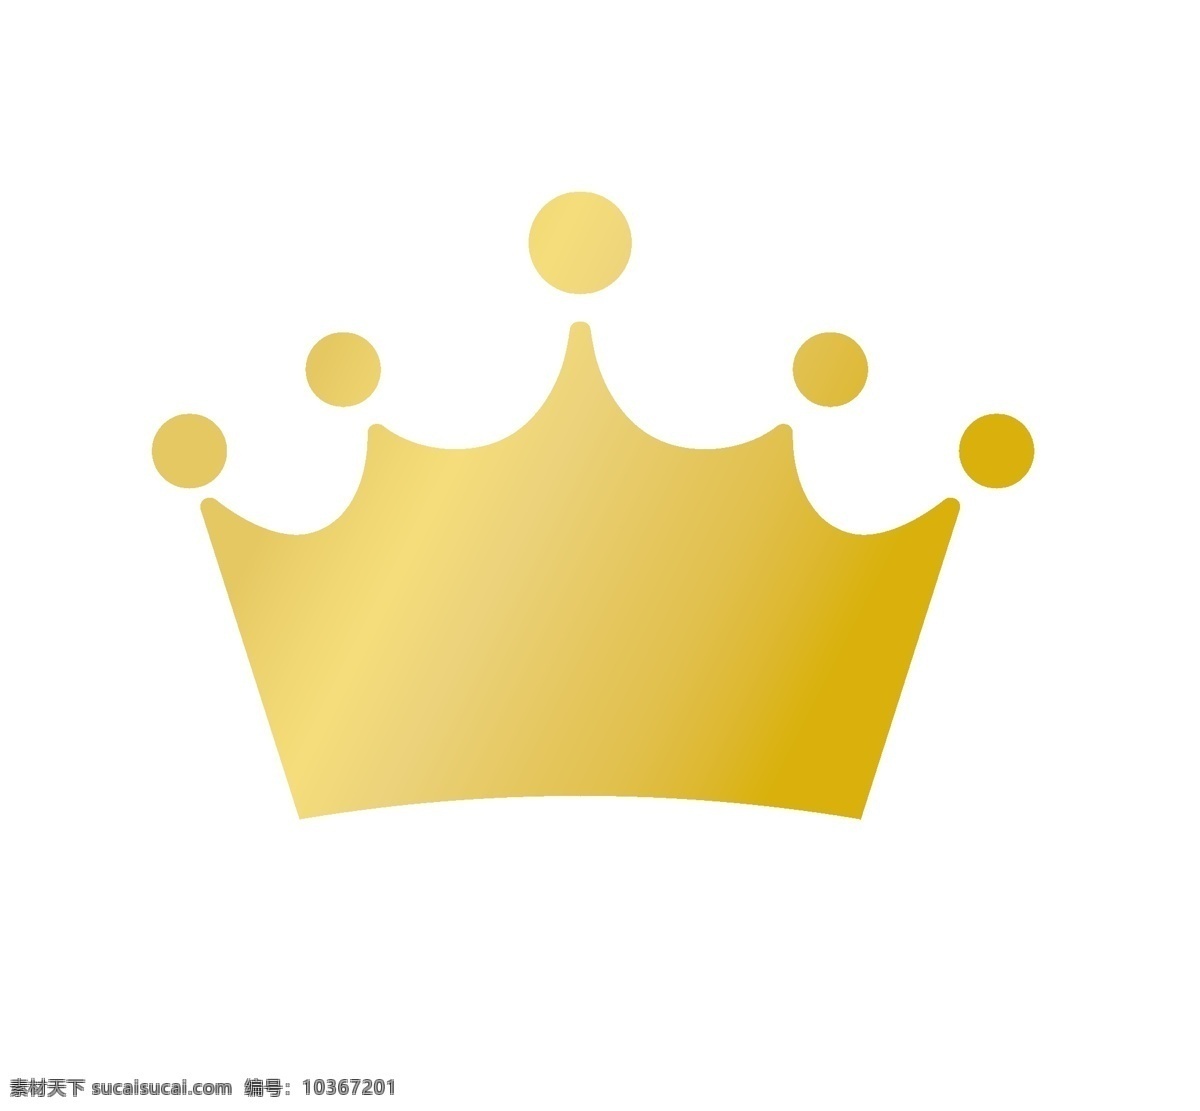 皇冠 生日 生日帽 寿星 婴儿 珍贵 女王 王冠